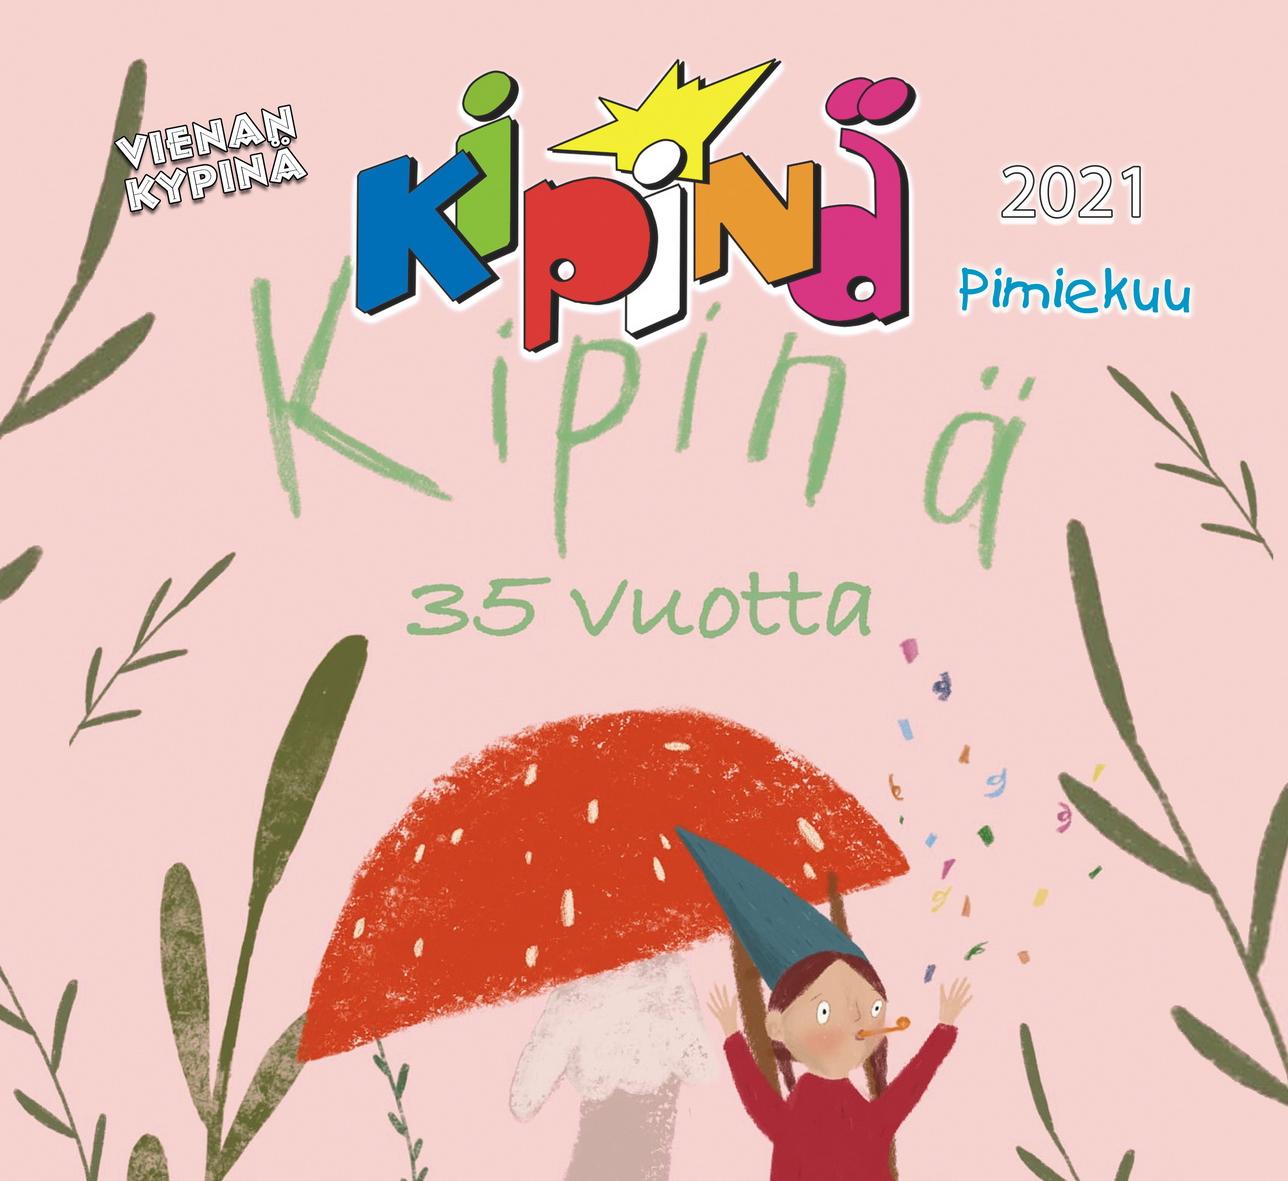 Lehen kanšikuvana on “Kipinän” 35-vuotispäivällä omissetun Hyvittelykortti-kilpailun voittajan Anna Filippovan piiruššuš. 6+